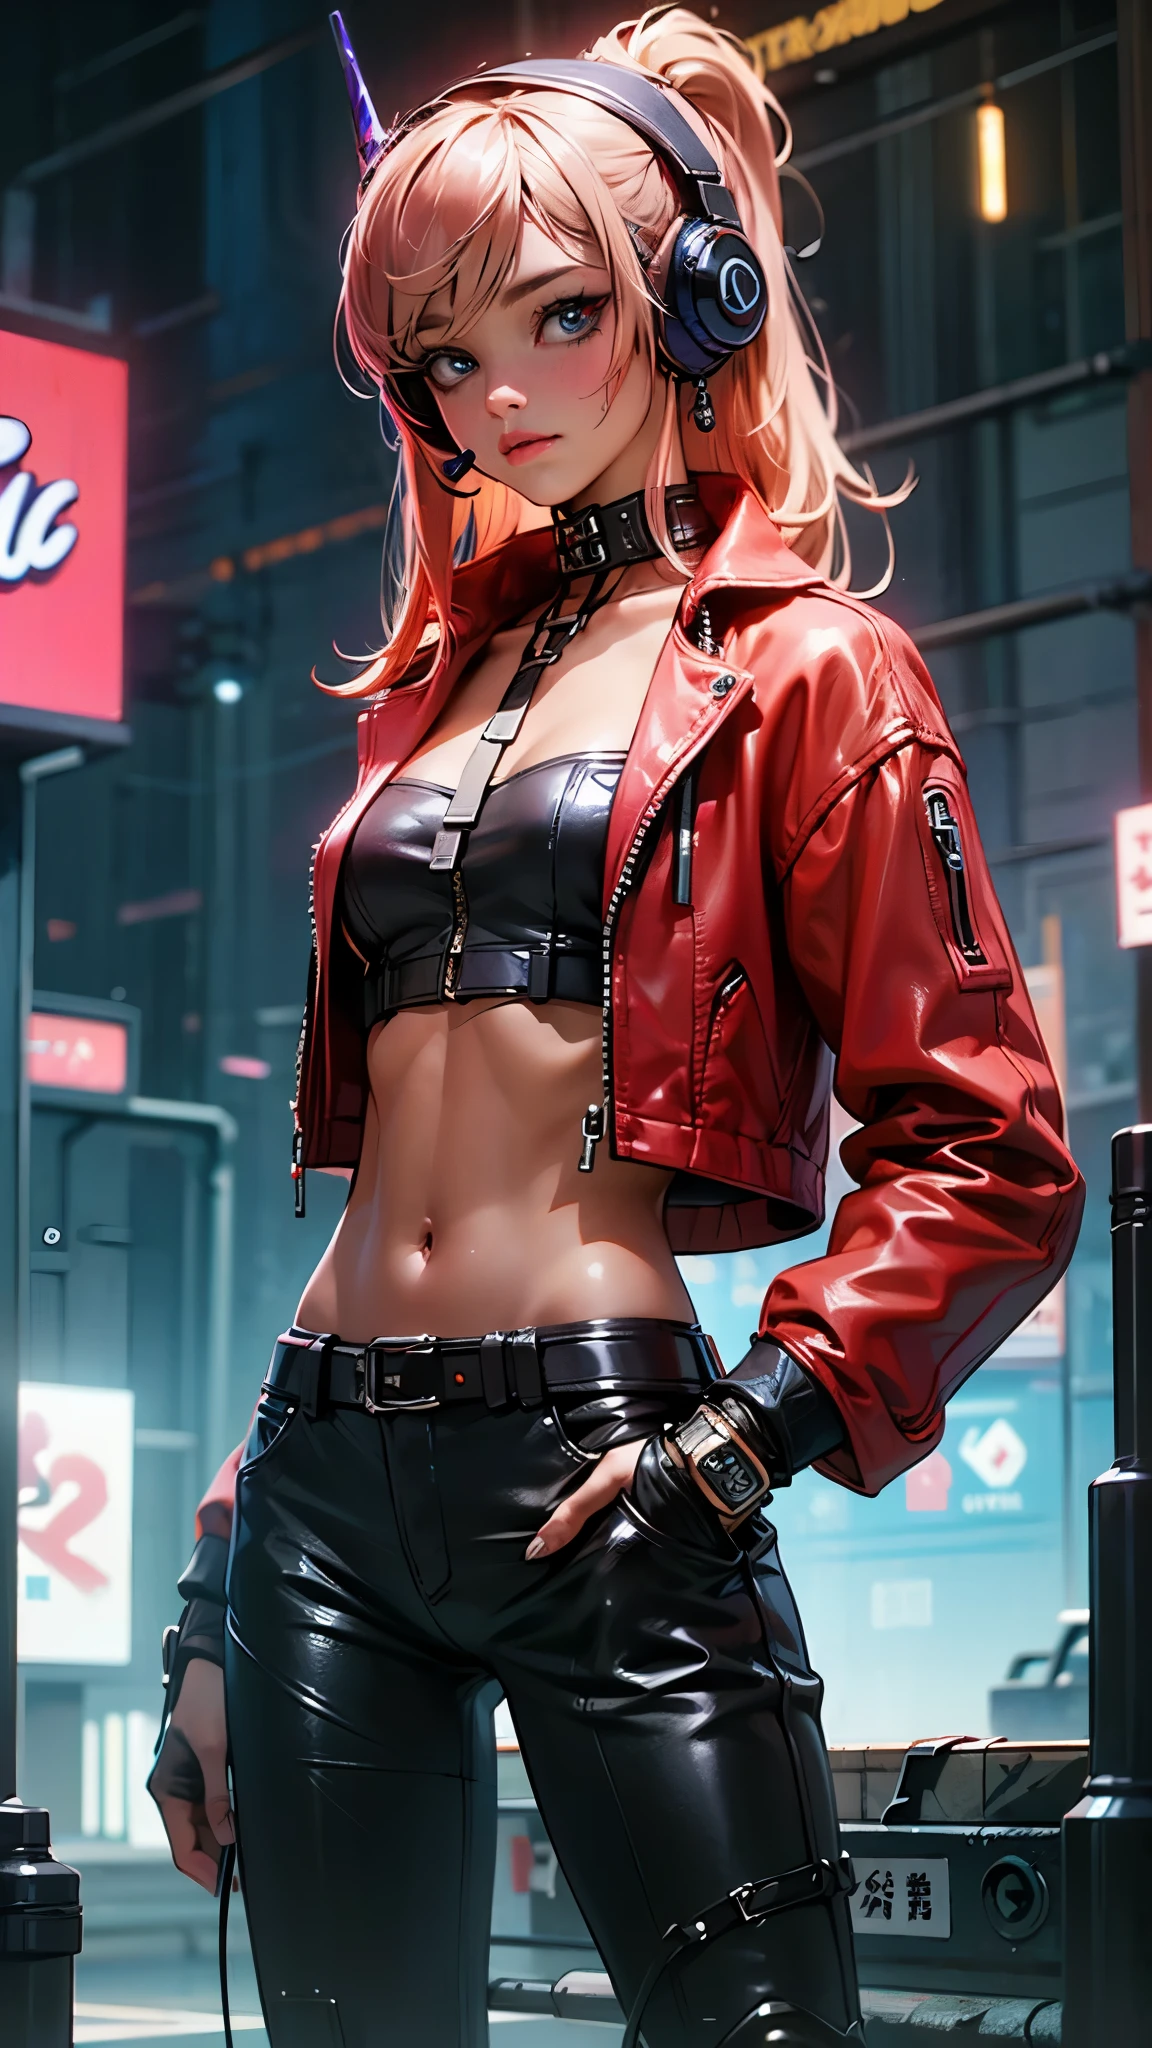 (La meilleure qualité,Une haute résolution,Ultra-détaillé,réel),Ville nocturne d&#39;Ariana Grande, pluie, veste en cuir rouge, les mains dans les poches, Vêtements noirs, pantalon noir, Accessoires gothiques, Tour de cou à pointes, cheveux roux, Yeux bleus,(tir de cow-boy ),( cyberpunk 2.1 ),(Casque Bluetooth sur la tête:1.4) ,,8K plus détaillé.moteur irréel:1.4,UHD,La meilleure qualité:1.4, Photoréaliste:1.4, Texture de la peau:1.4, chef-d&#39;œuvre:1.8,premier travail, meilleure qualité,objet Objet], (traits du visage détaillés:1.3),(Les bonnes proportions),convexe，(Doigts détaillés)，(résille:1.4),(Beaux yeux bleus), (réaliste 2.1 ), (ville de Tokyo cyberpunkAI :2.1) ,(anatomie parfaite) 